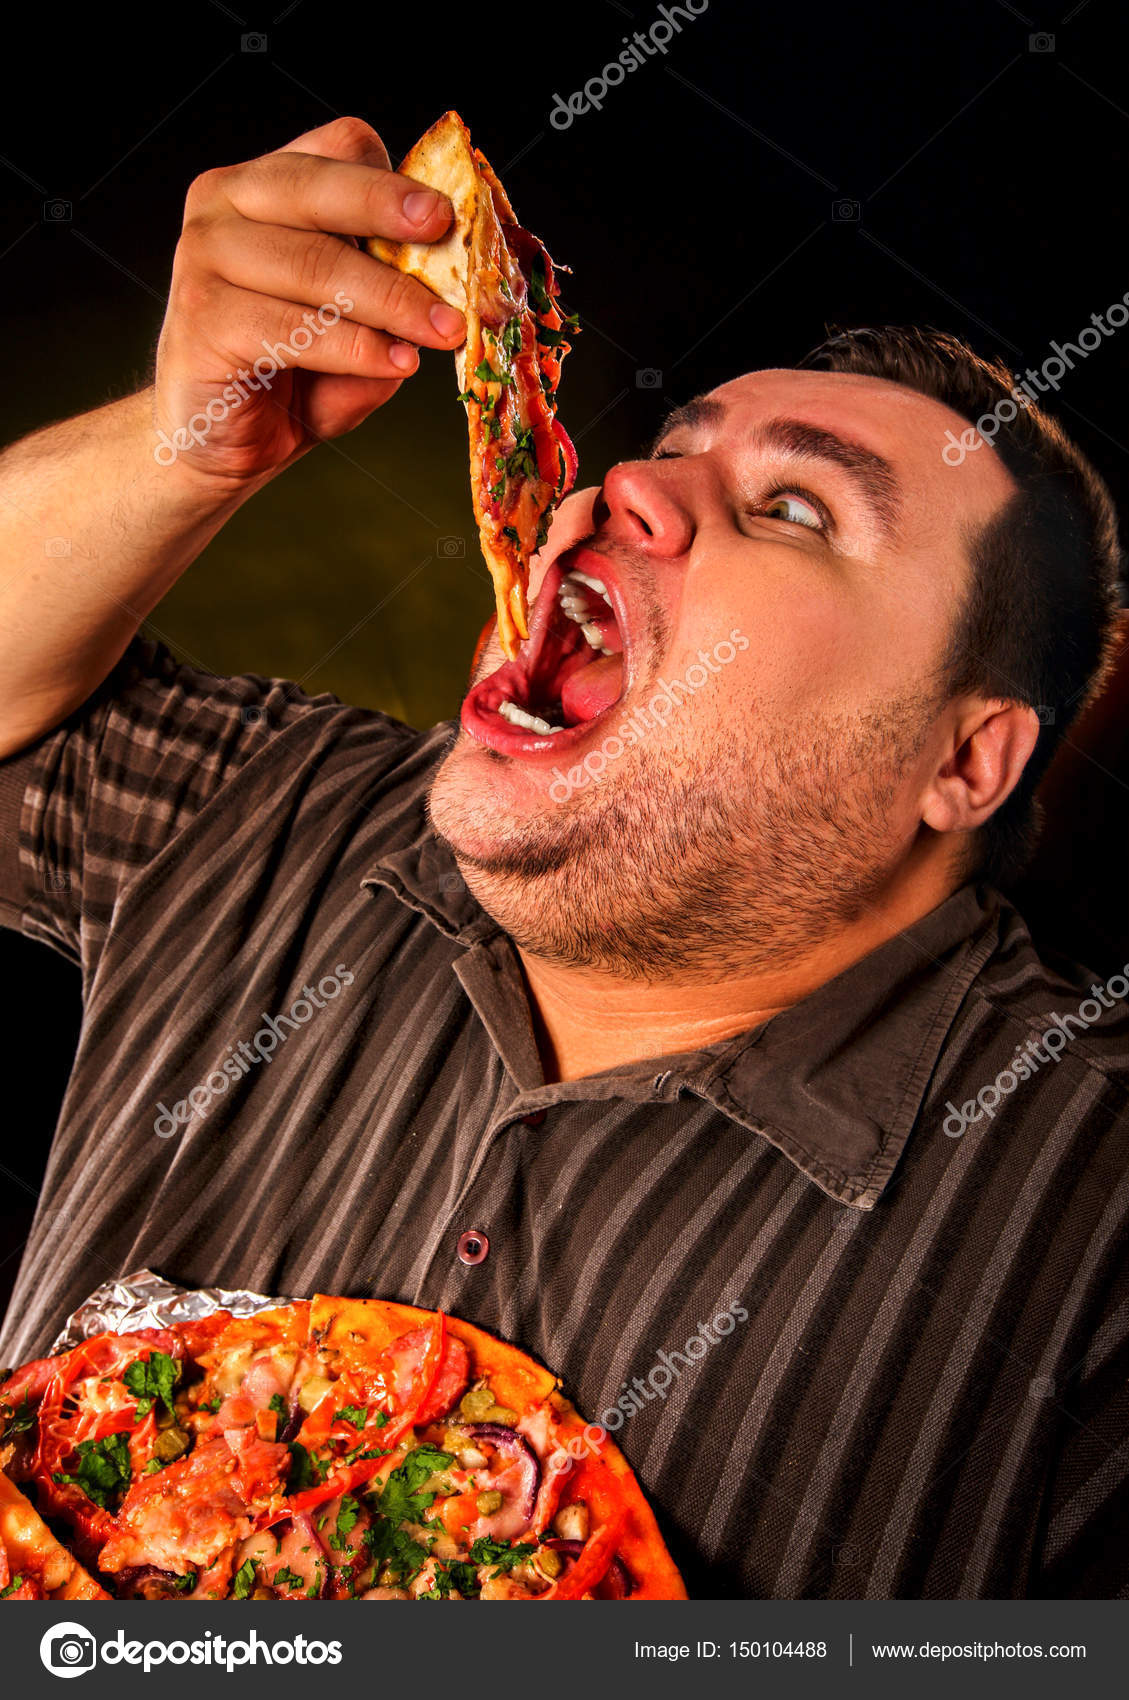 Fat People Eating Like Slobs - áˆ Fat funny stock pictures, Royalty Free fat guy eating ...